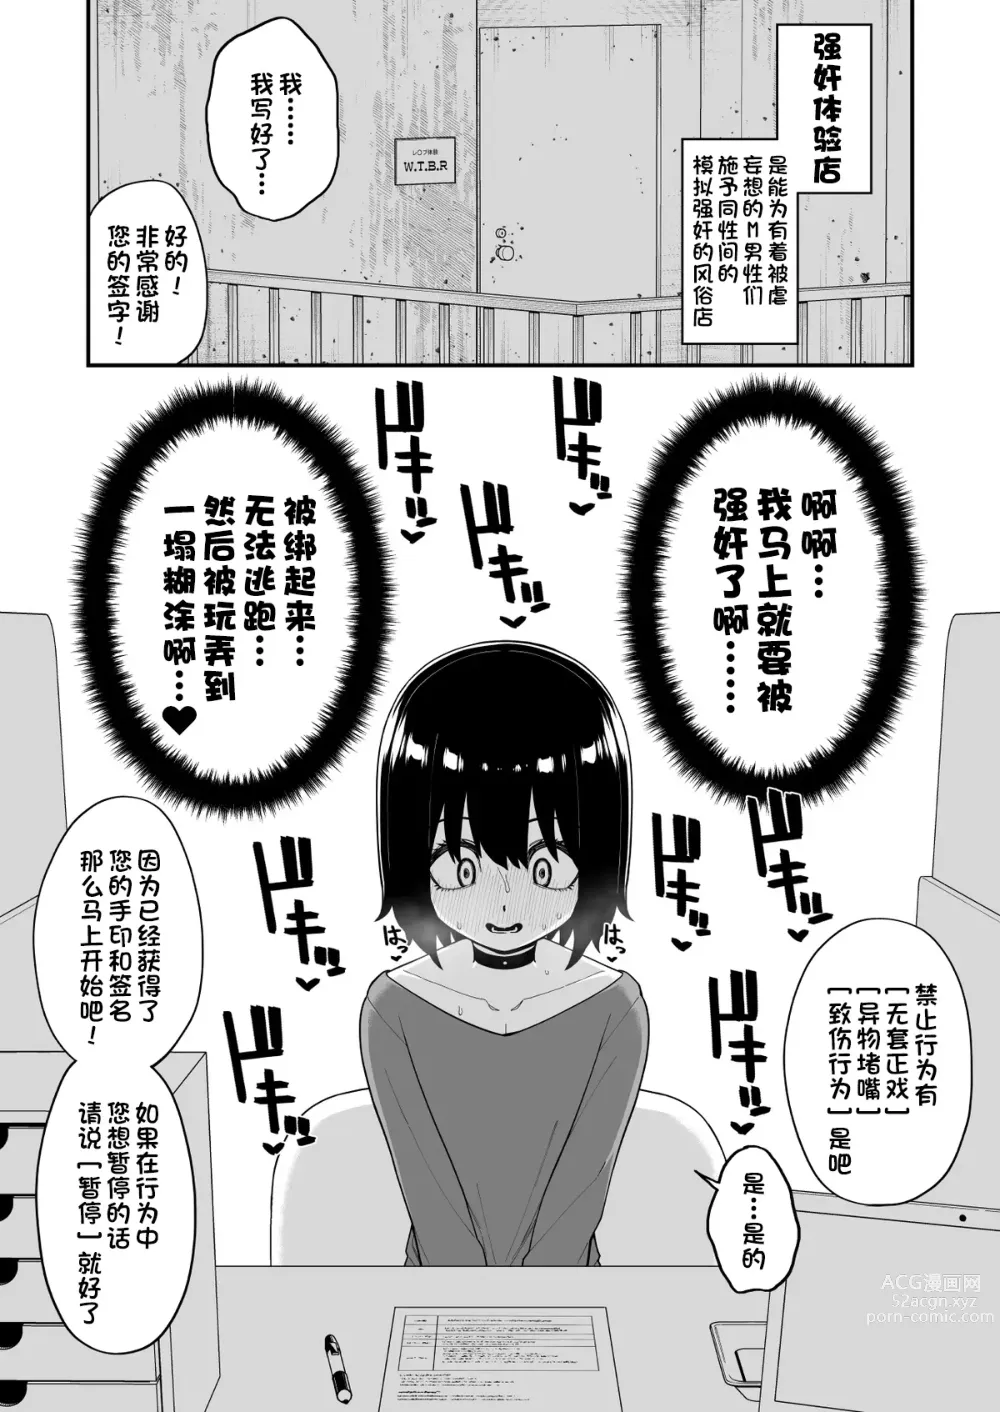 Page 3 of doujinshi Hidoi Me ni Au Otokonoko-tachi Vol. 3